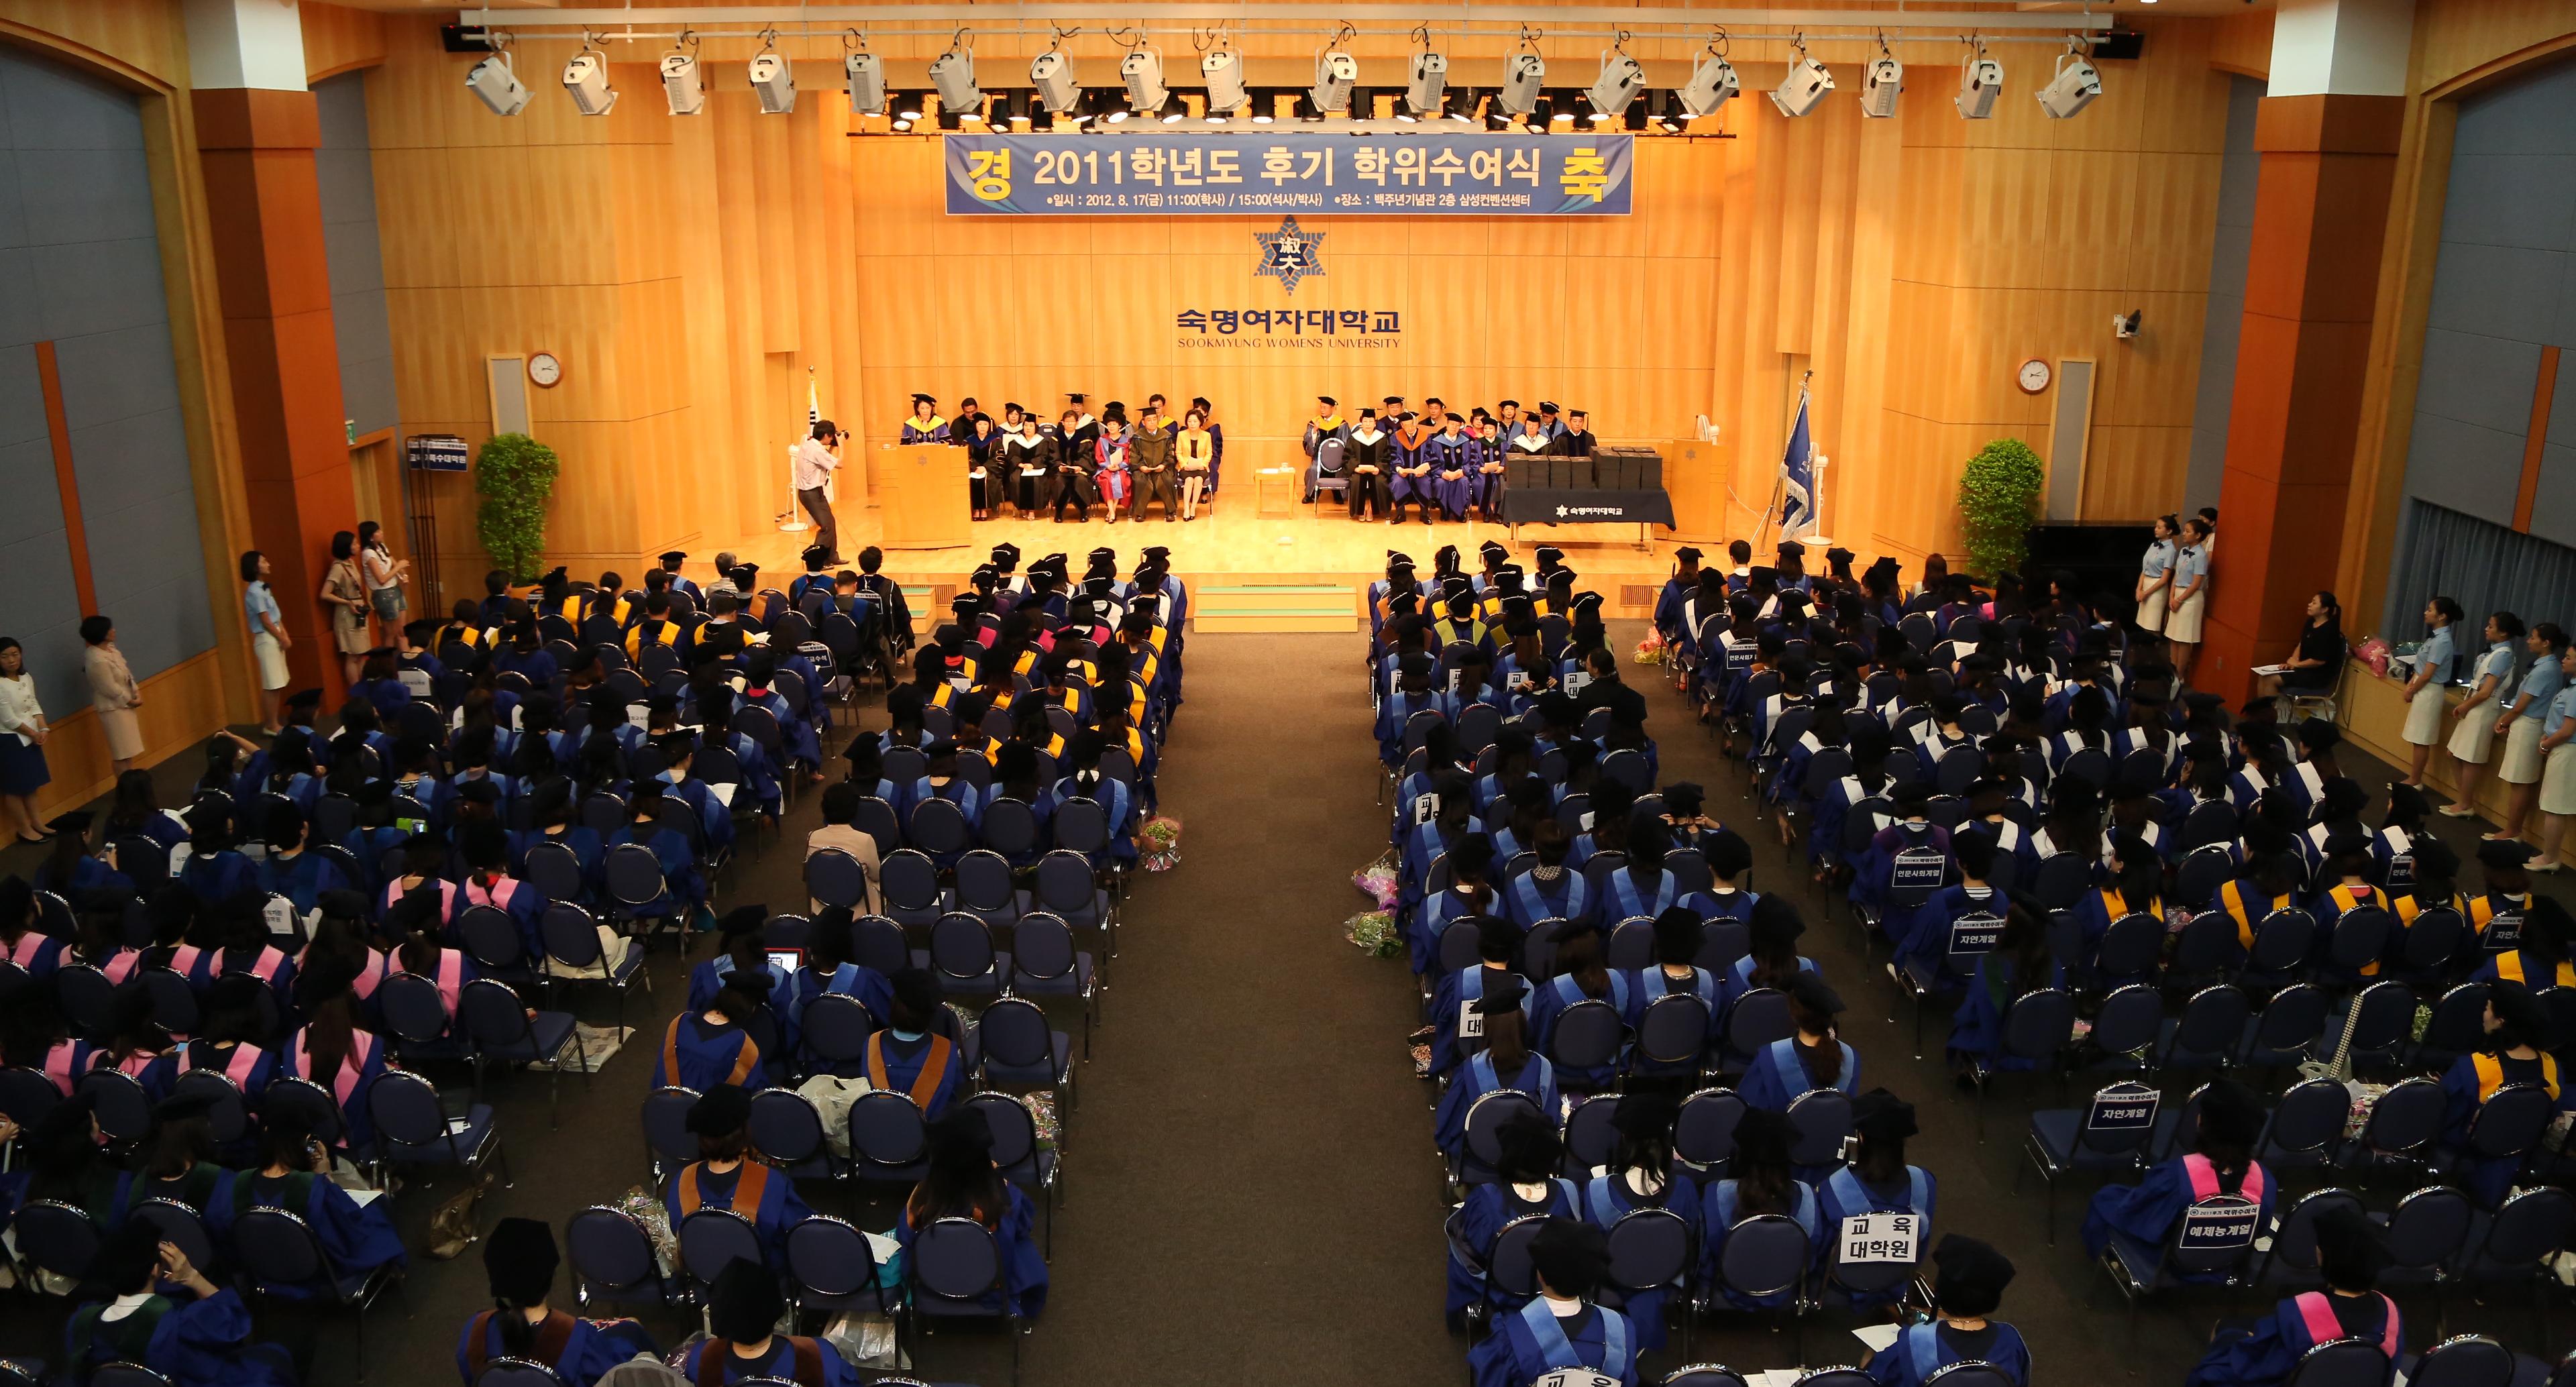 2011학년도 후기 학위수여식 개최